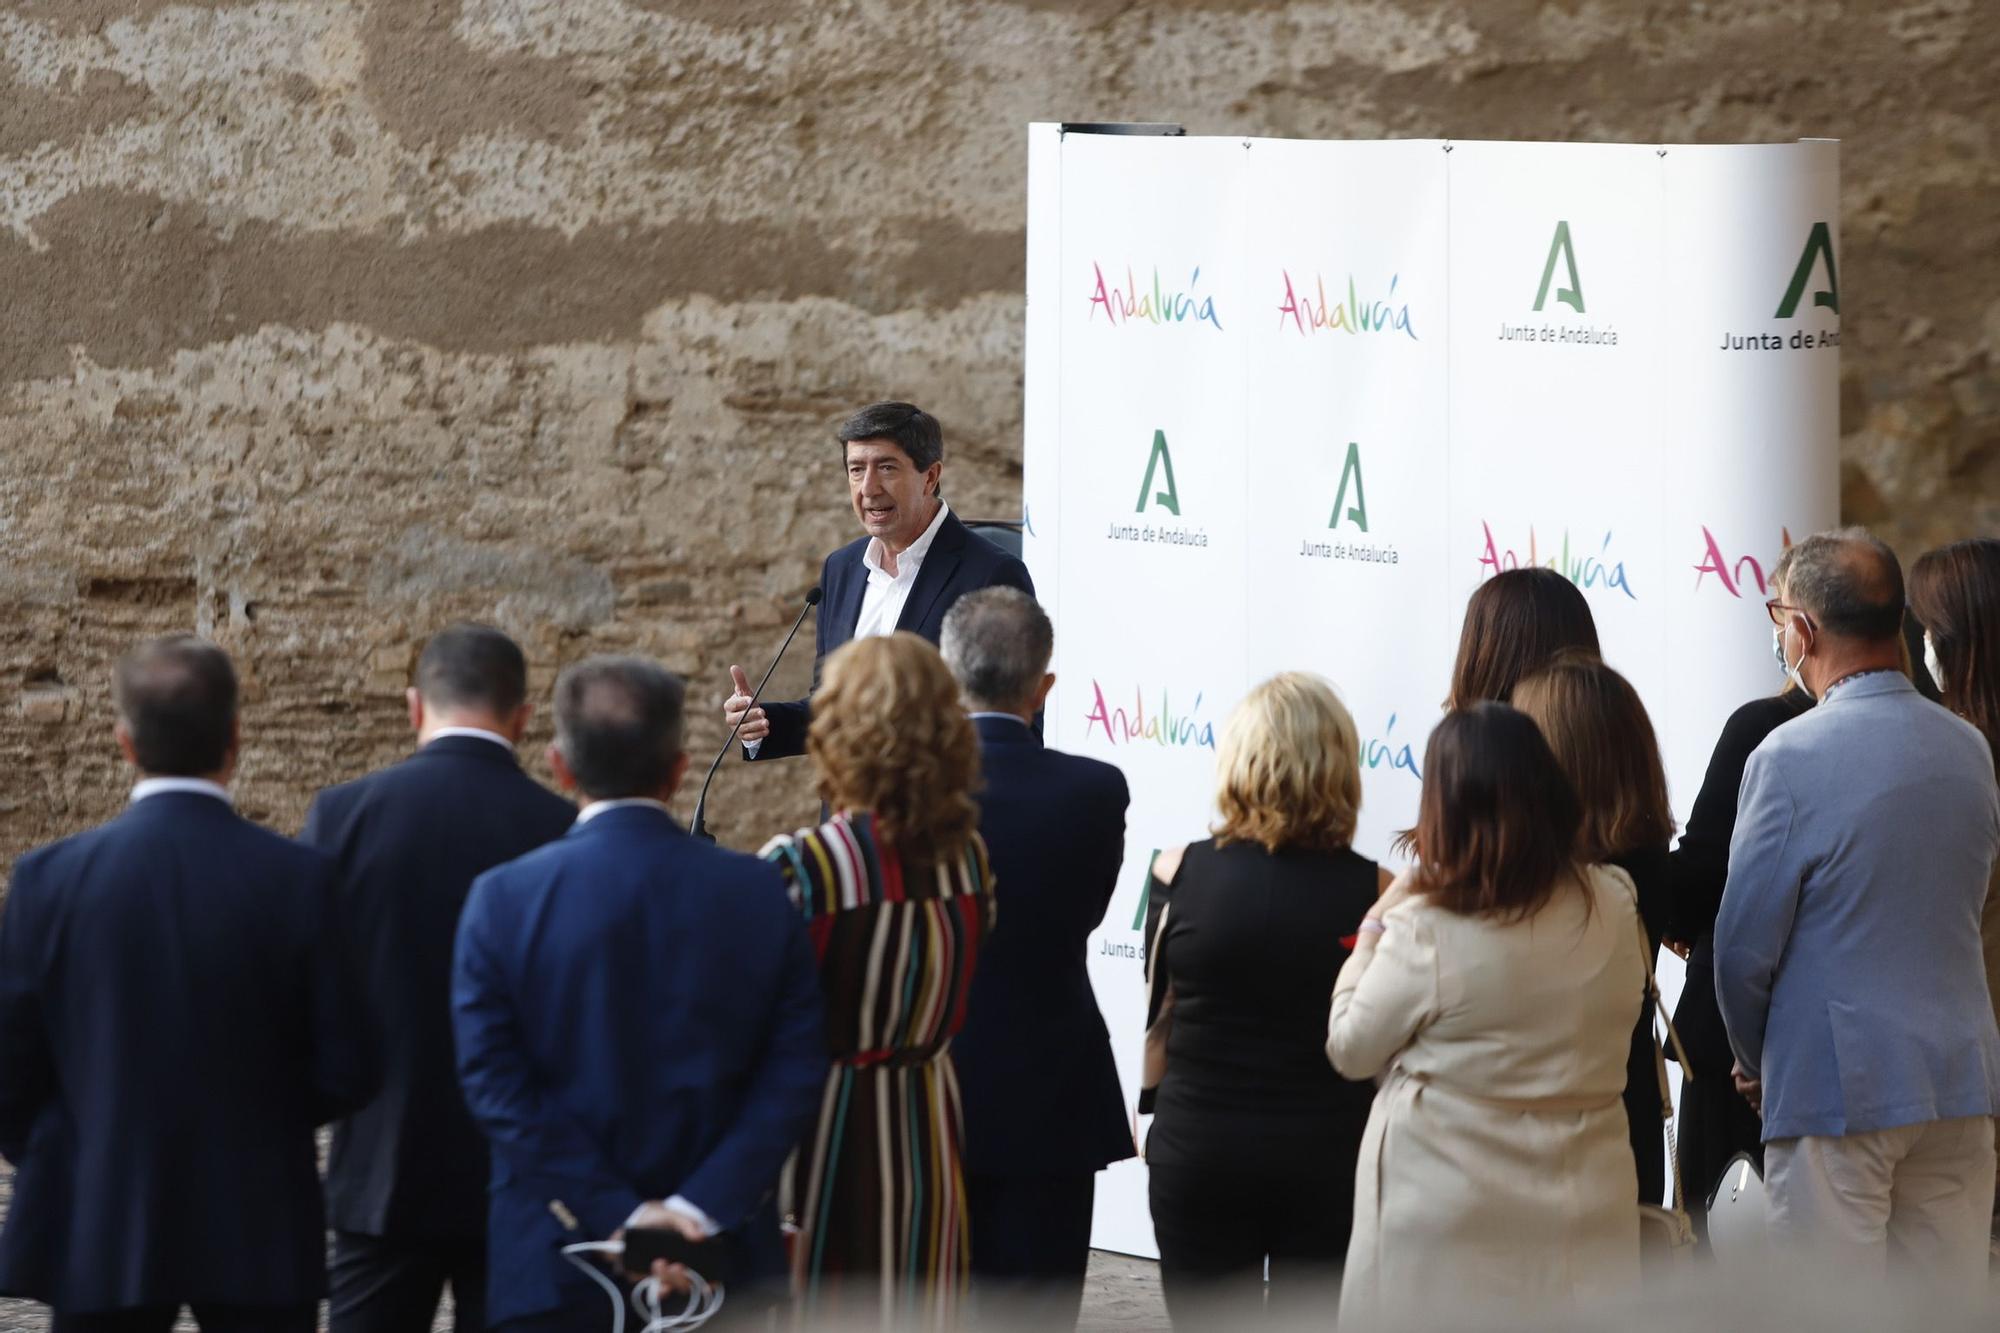 Andalucía presenta su nueva campaña turística con Antonio Banderas